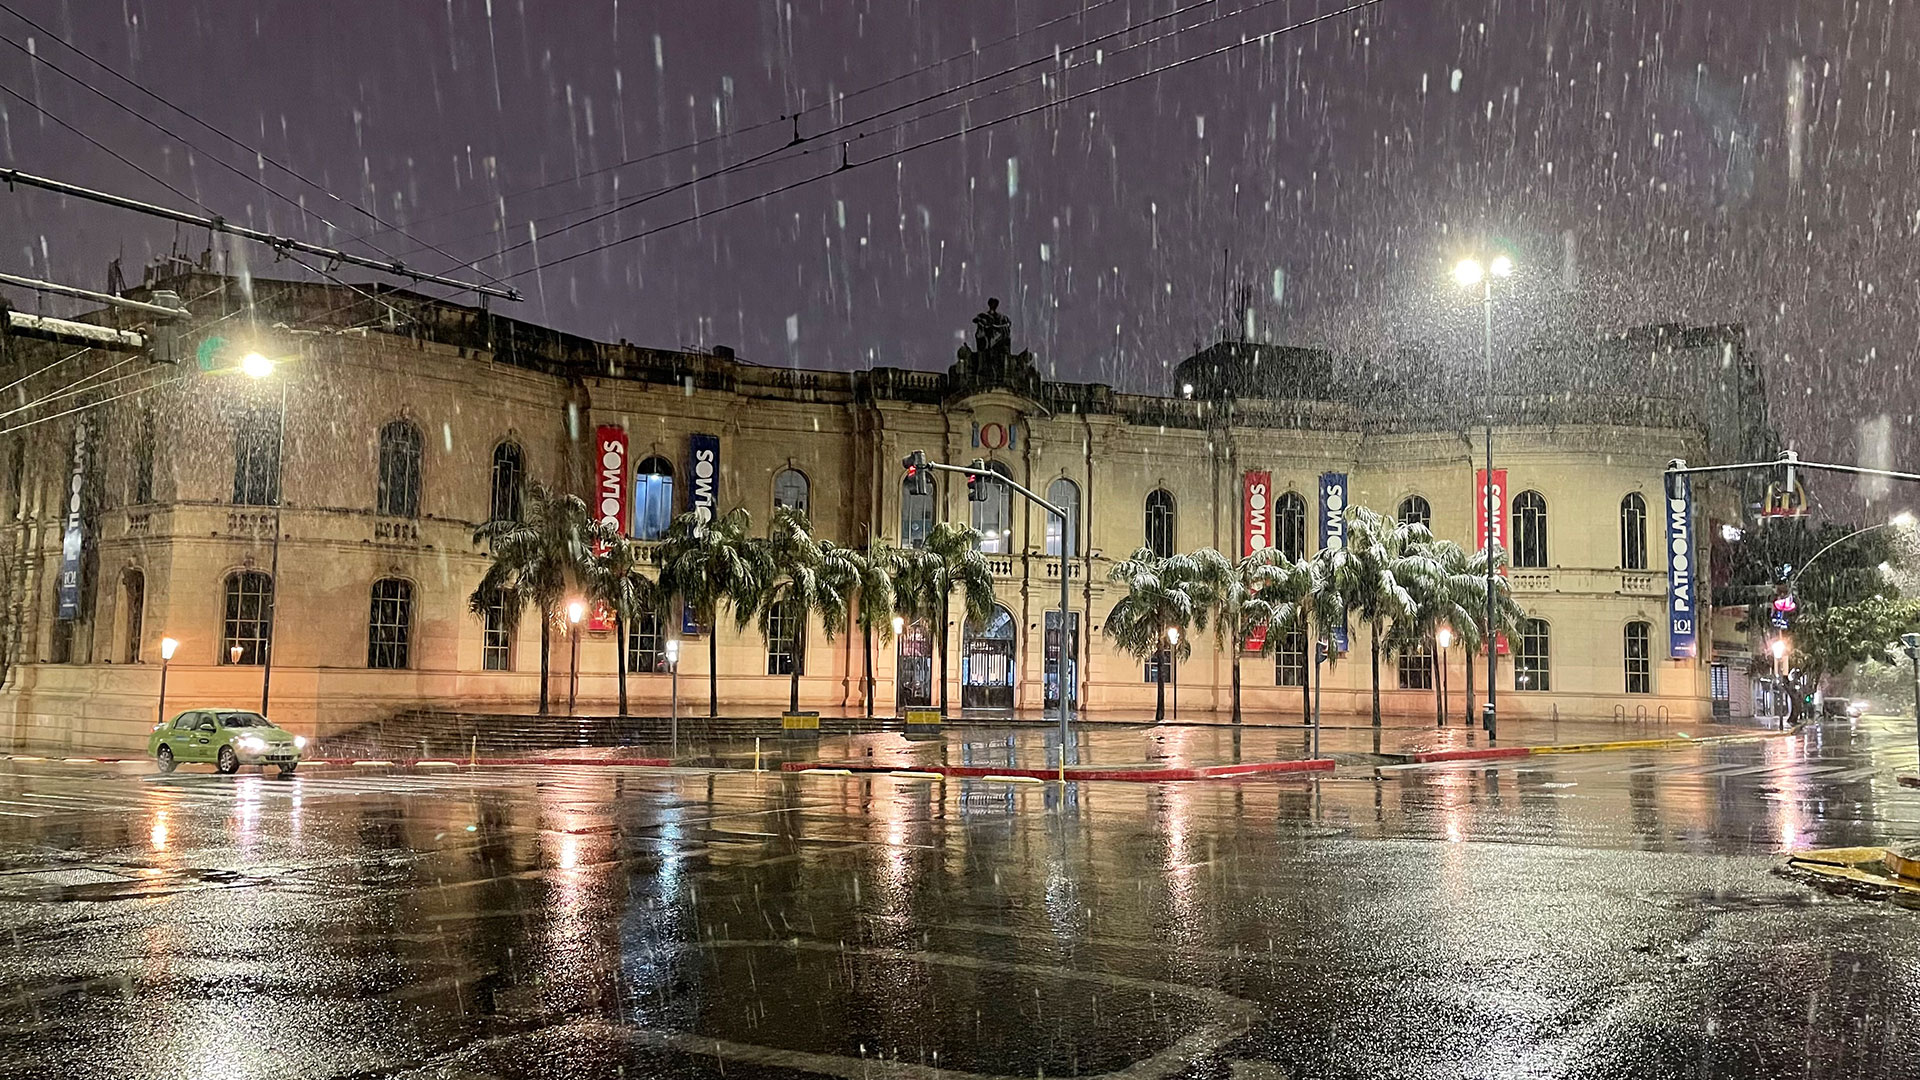 El servicio meteorológico de Córdoba anunció que se espera un clima nublado para todo el resto del día en la capital provincial